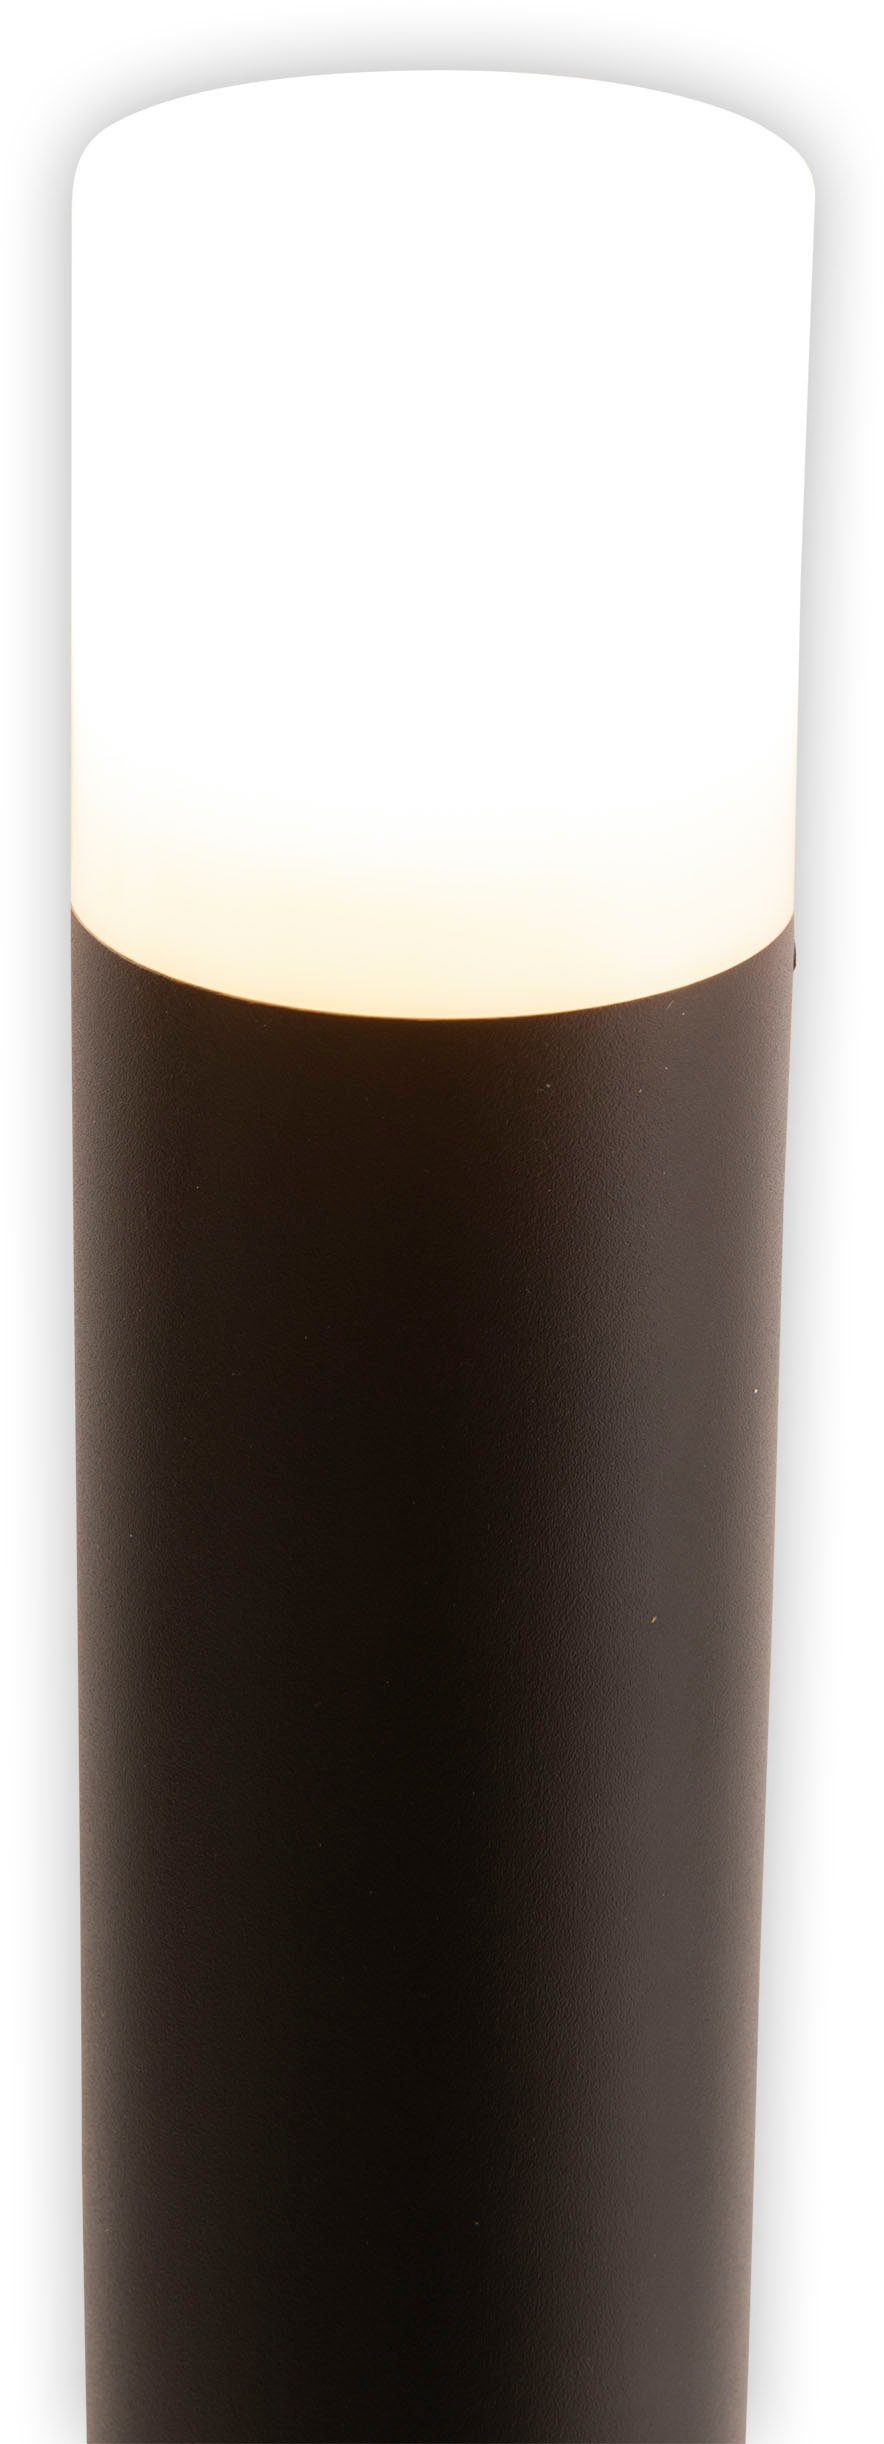 Torcia, näve 80cm schwarz Aluminium E27 exkl. Leuchtmittel Sockelleuchte x Höhe ohne Leuchtmittel, IP44 1